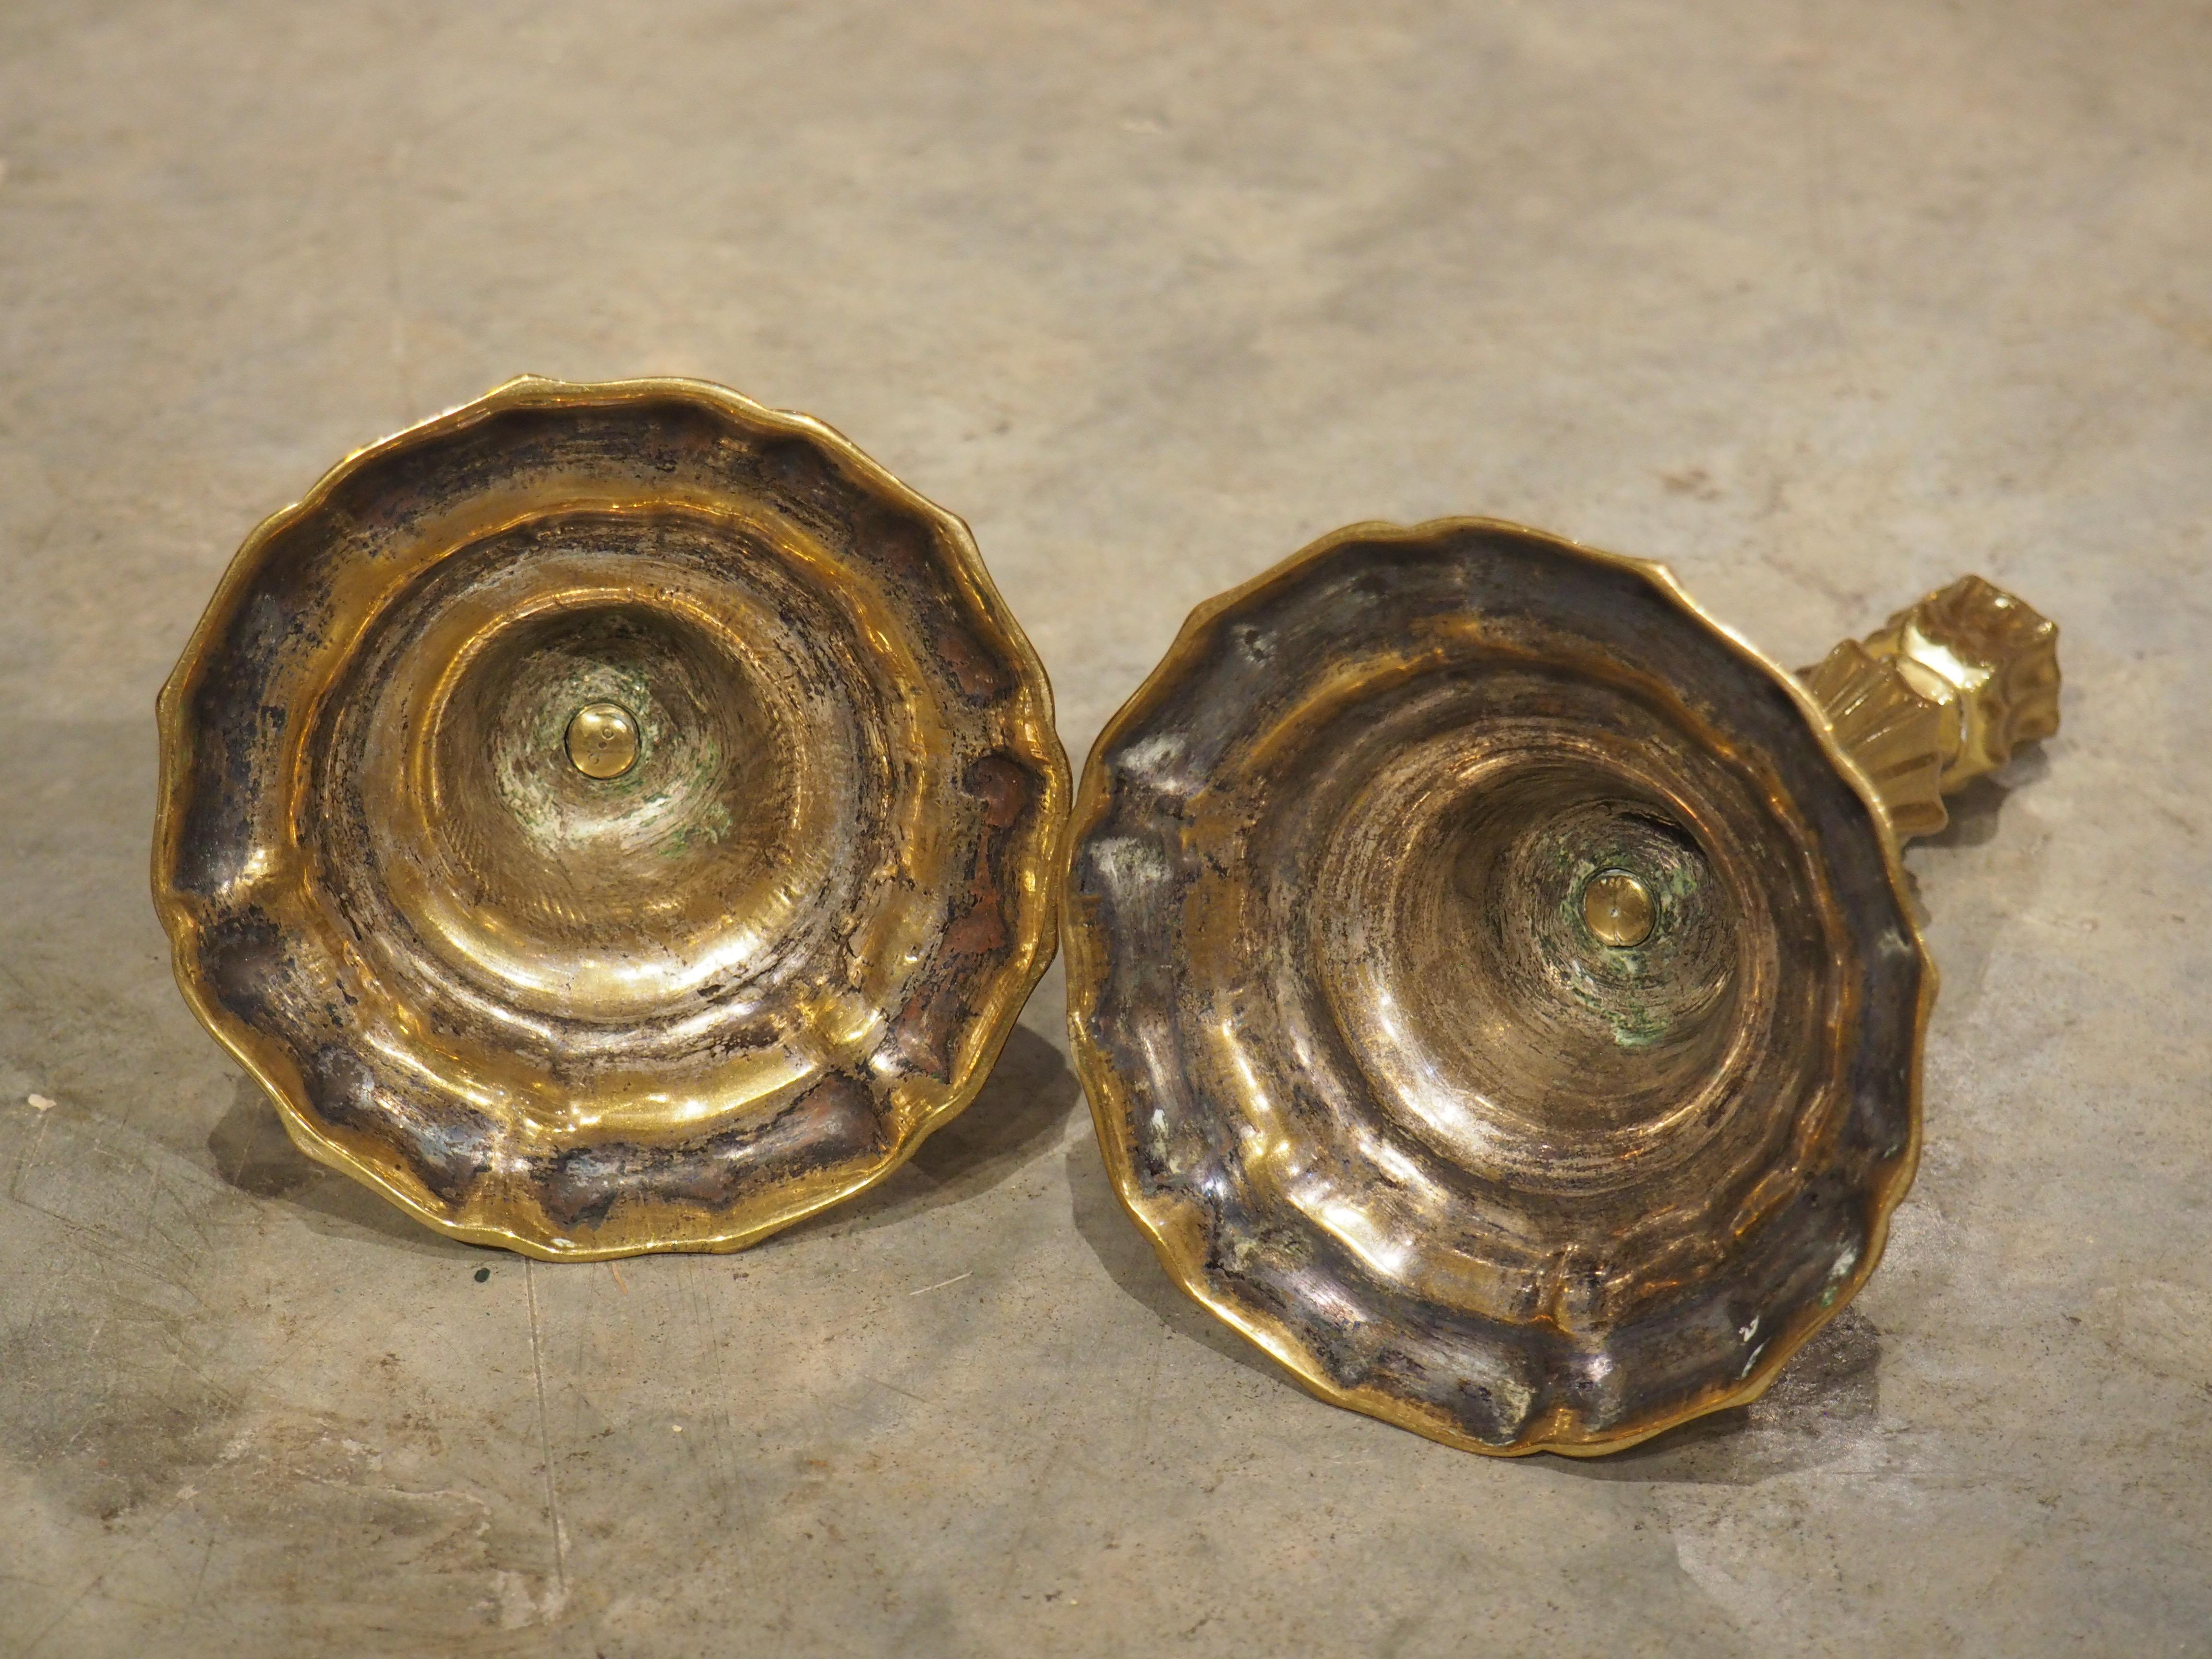 Fondée en France dans les années 1700, cette paire de chandeliers en bronze doré présente des bases très profilées et incurvées, reflétées par les lobes en retrait qui embellissent les tiges et les chapiteaux qui rappellent des bourgeons de fleurs